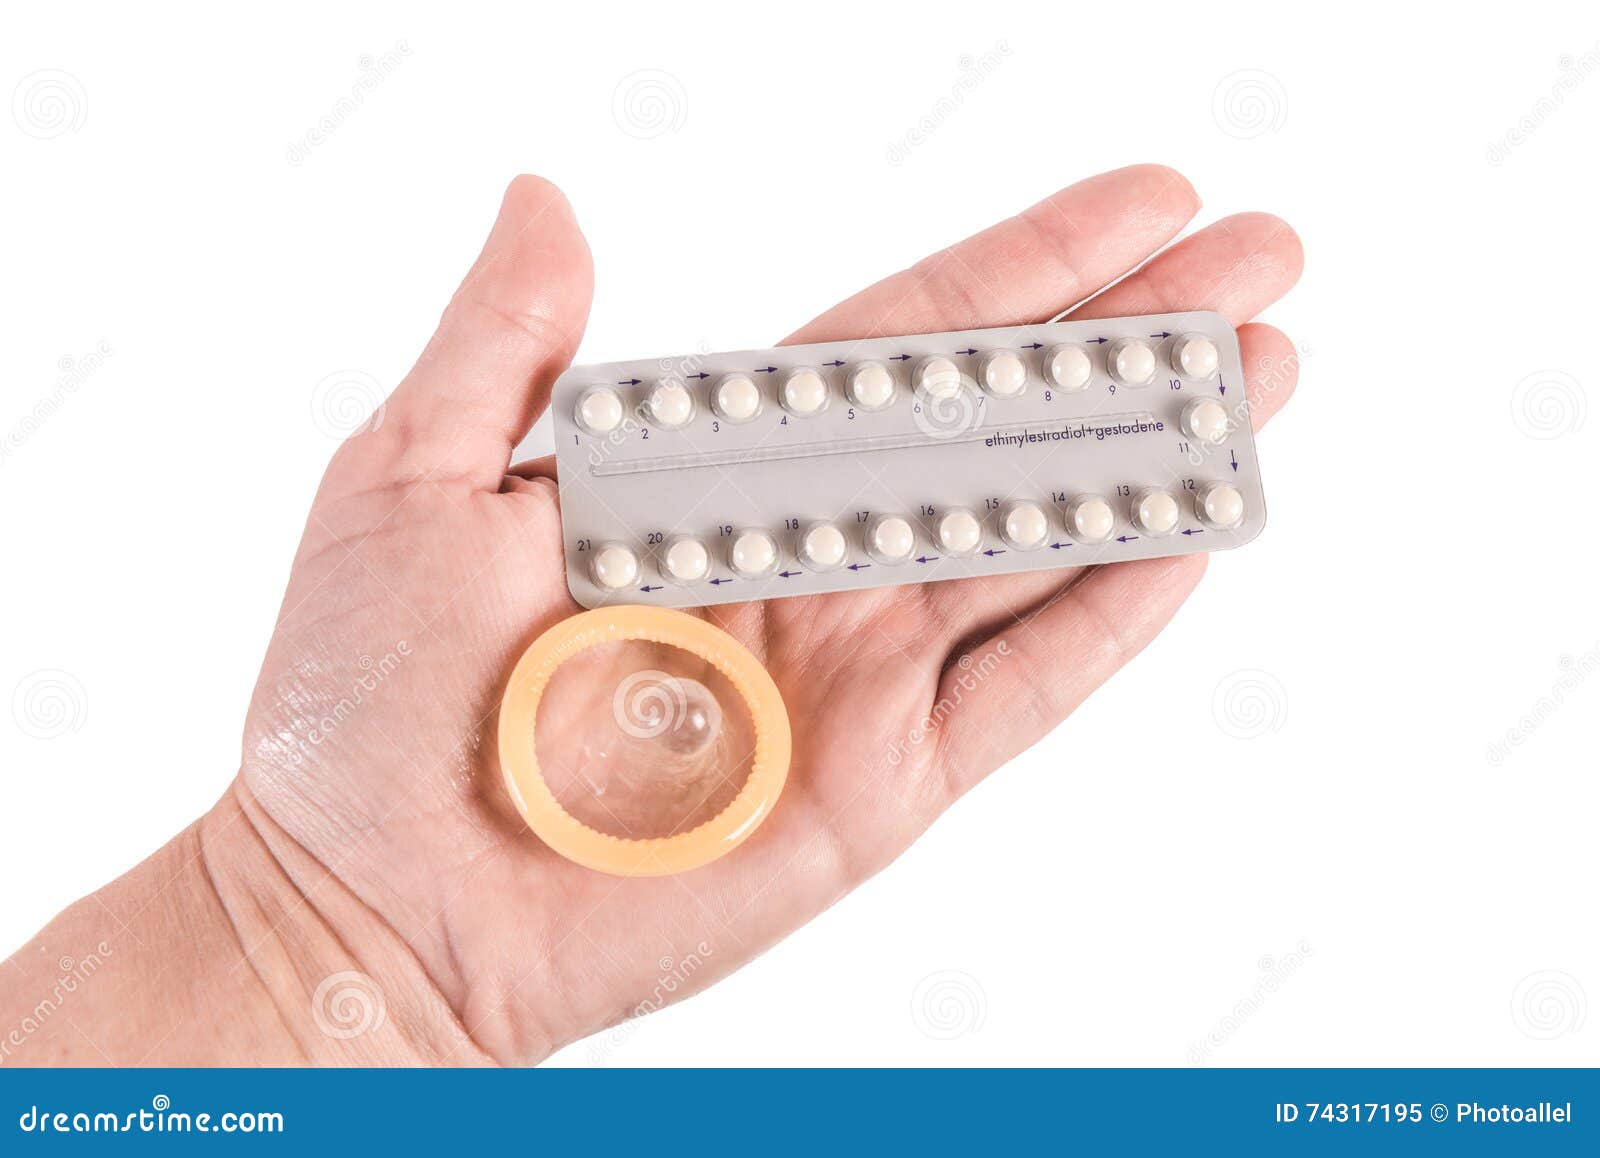 Предохранение после беременности. Контрацептивы. Контрацептивы презервативы. Барьерные контрацептивы таблетки. Пероральные контрацептивы.